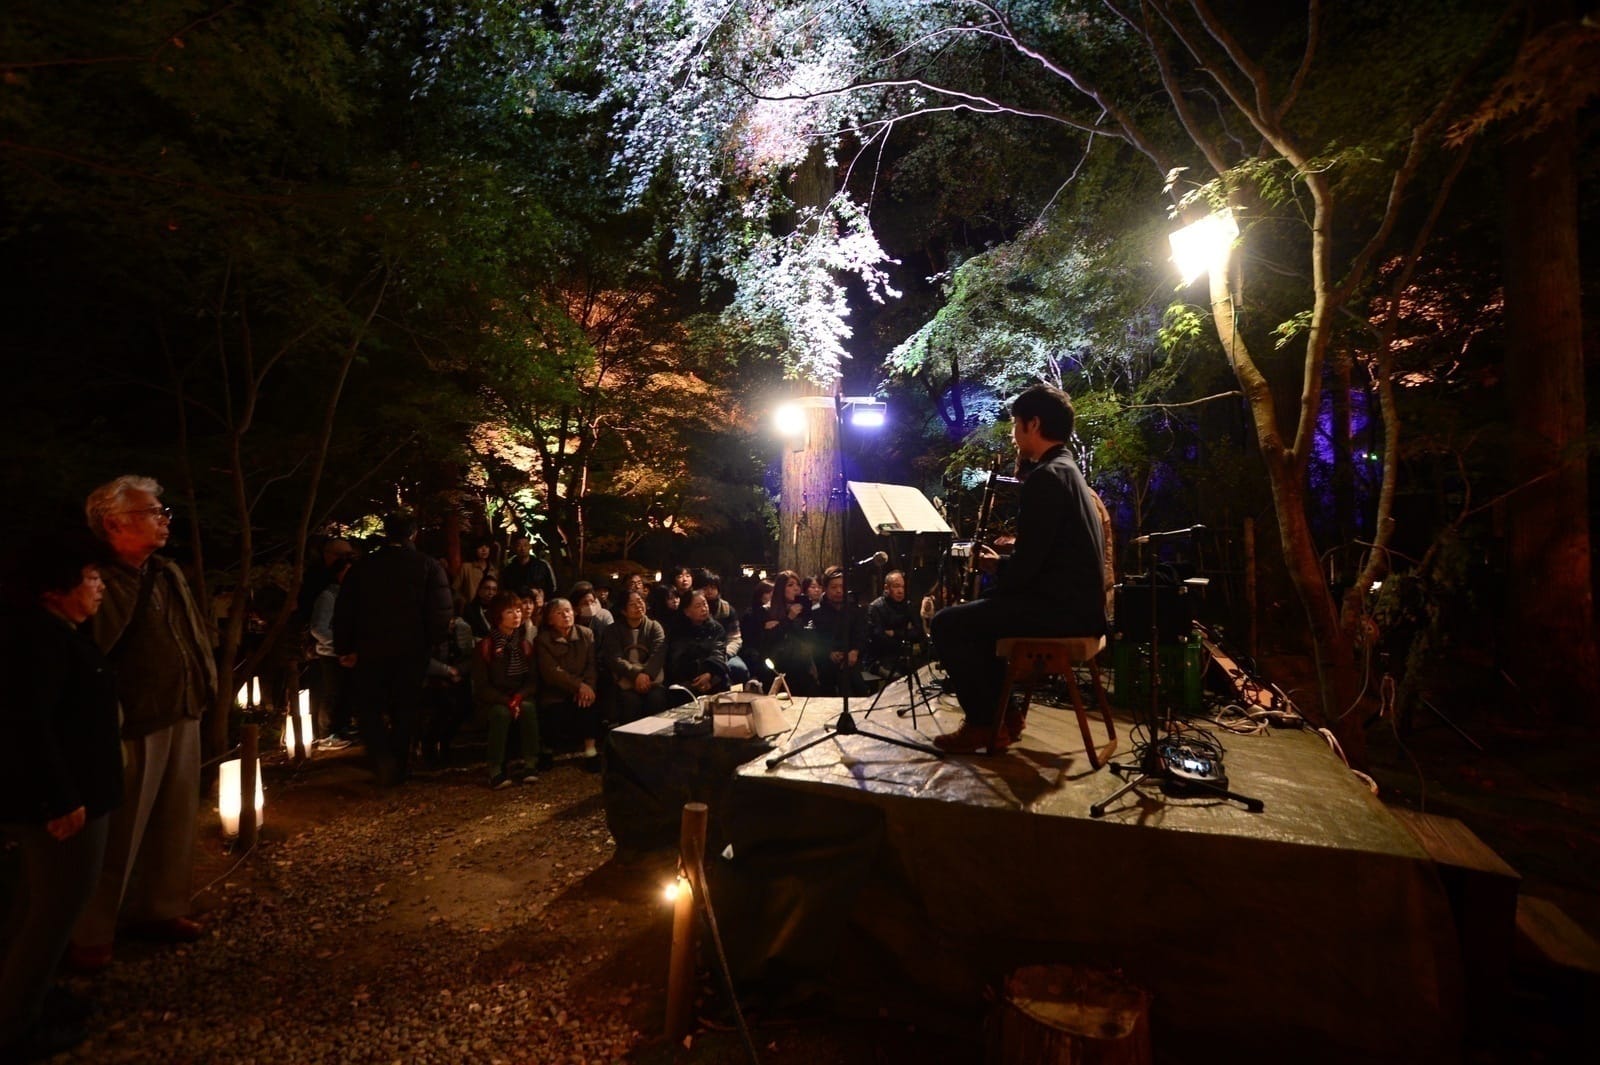 Lữ khách xem trình diễn nhạc hòa tấu trong khu vườn đêm ở Entsuin 